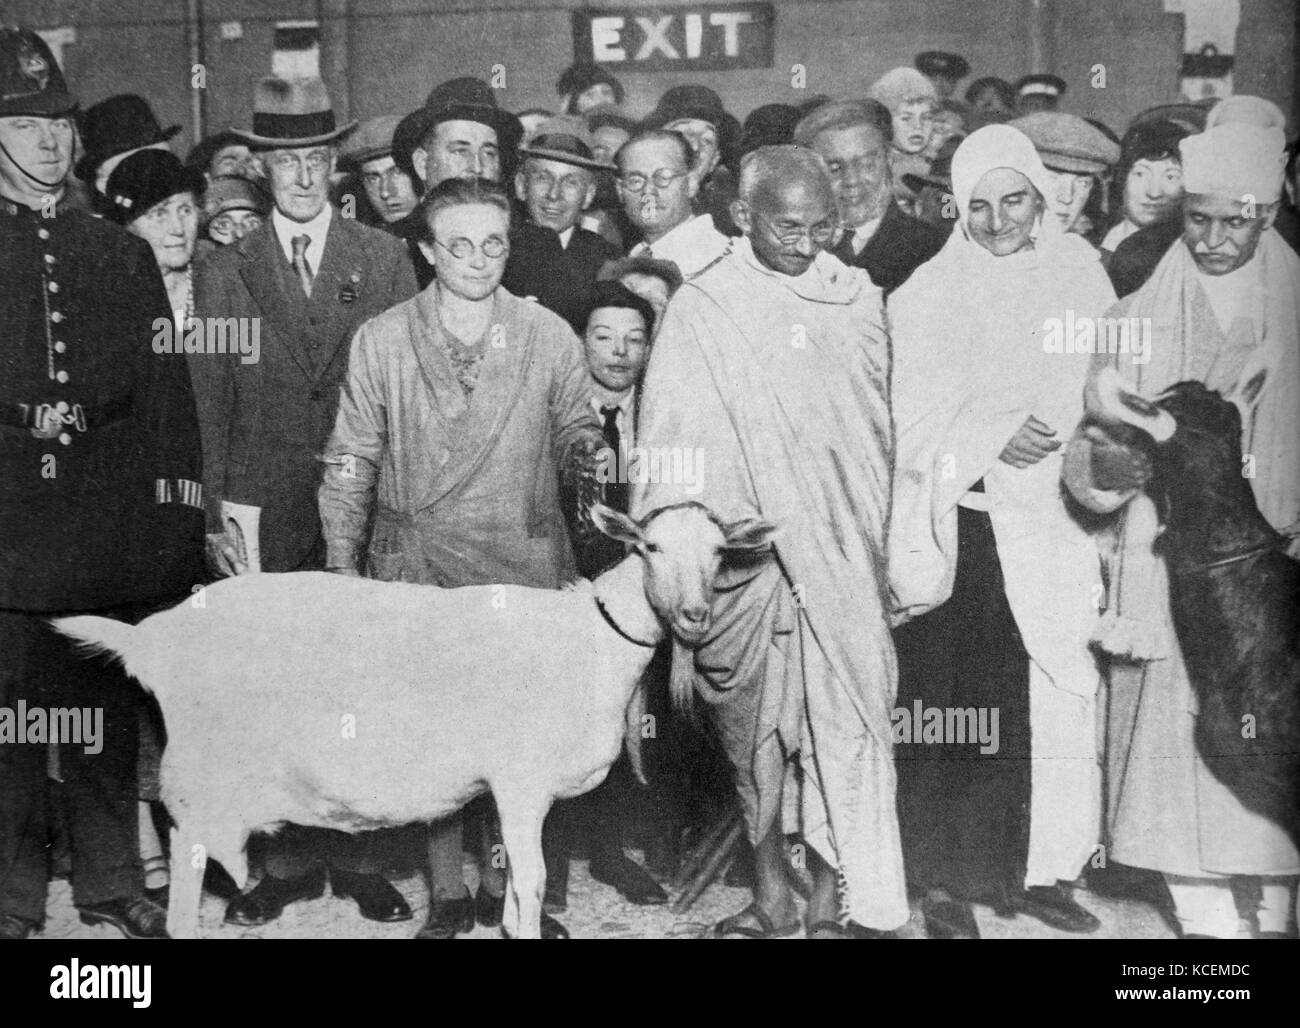 Mahatma Gandhi mit seinem Unterstützer, Madeleine Slade, und zwei Ziegen. Besuchen Sie London im Jahre 1931, während seiner Tour durch England. Mohandas Gandhi (1869 - 1948) war der bedeutendste Führer der indischen Unabhängigkeitsbewegung in Britisch - Indien regiert. Stockfoto